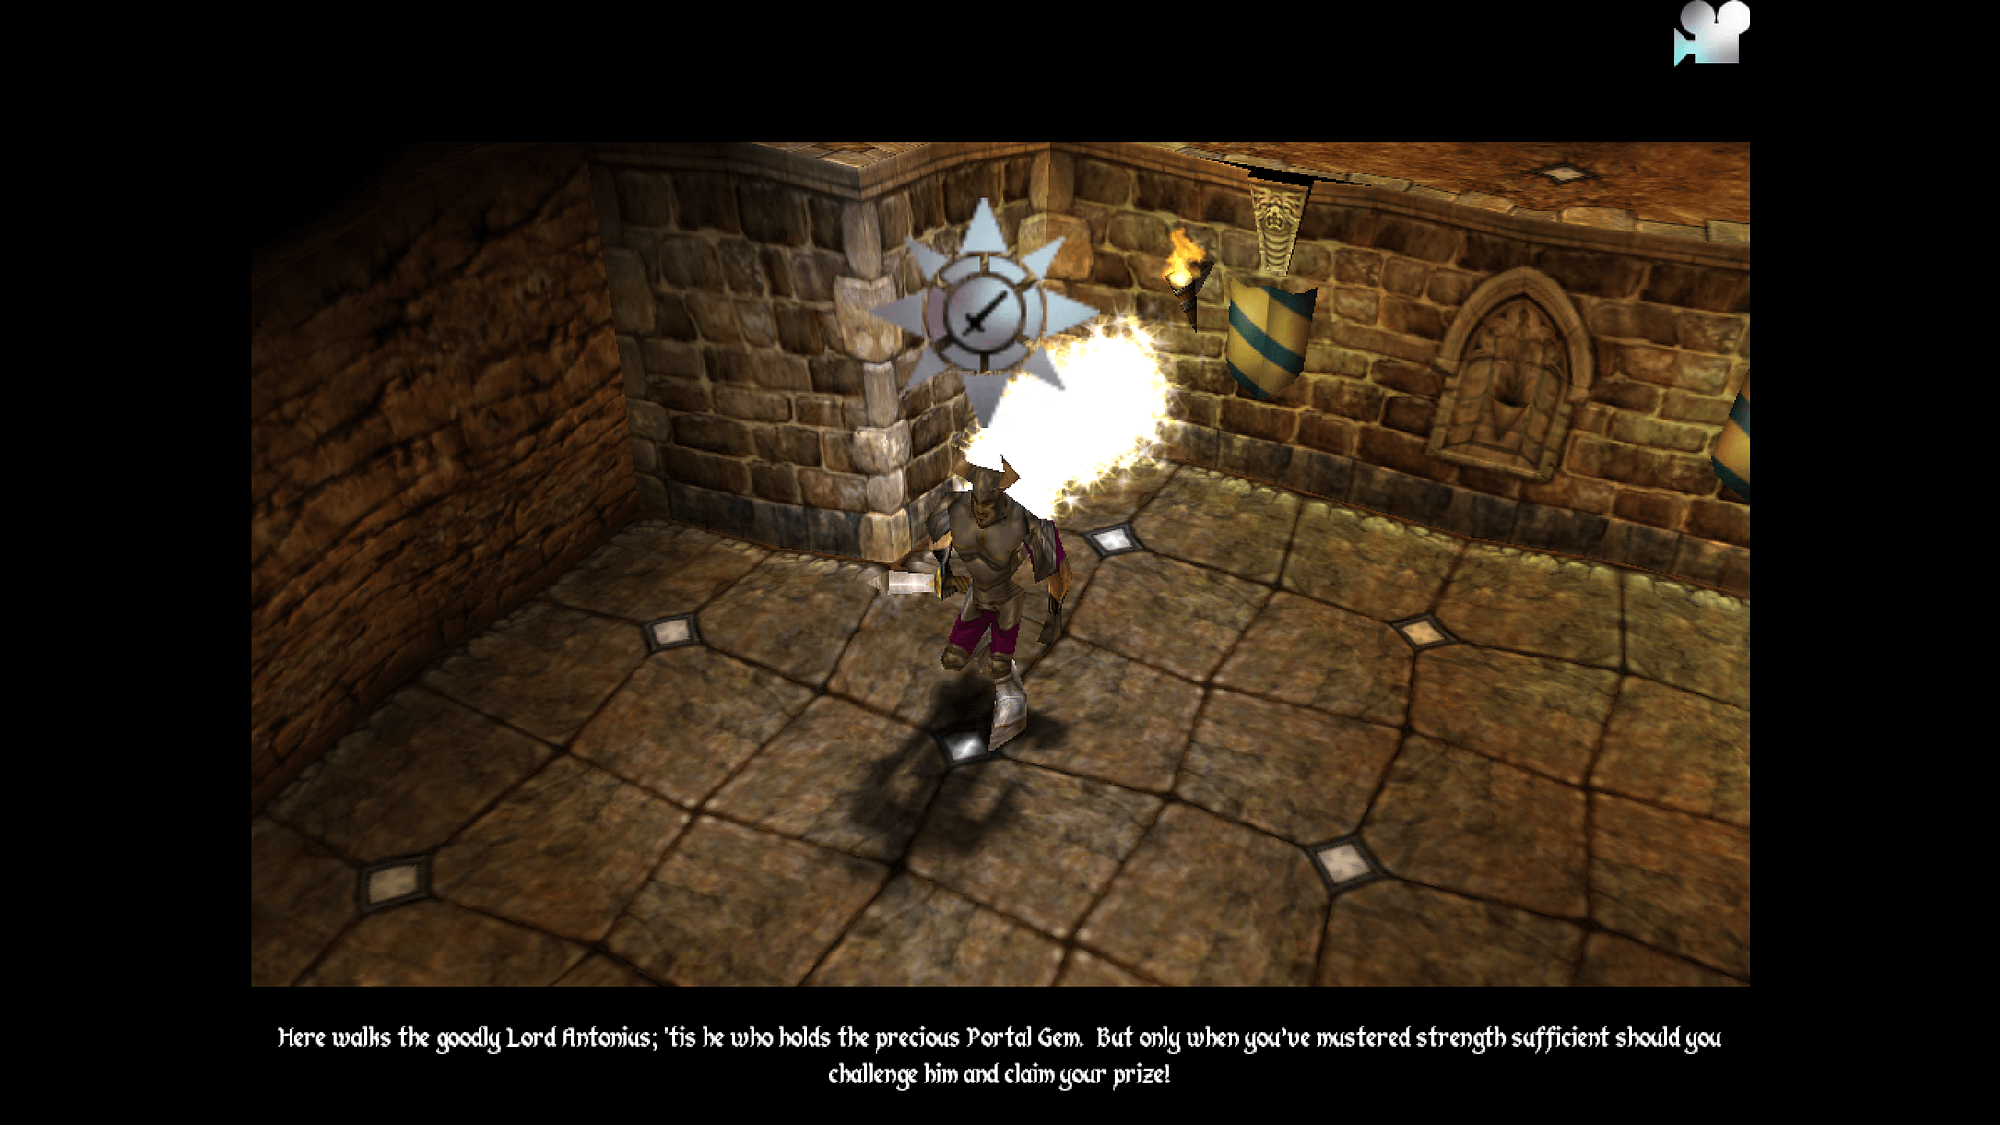 A Dungeon Keeper 2 screenshot